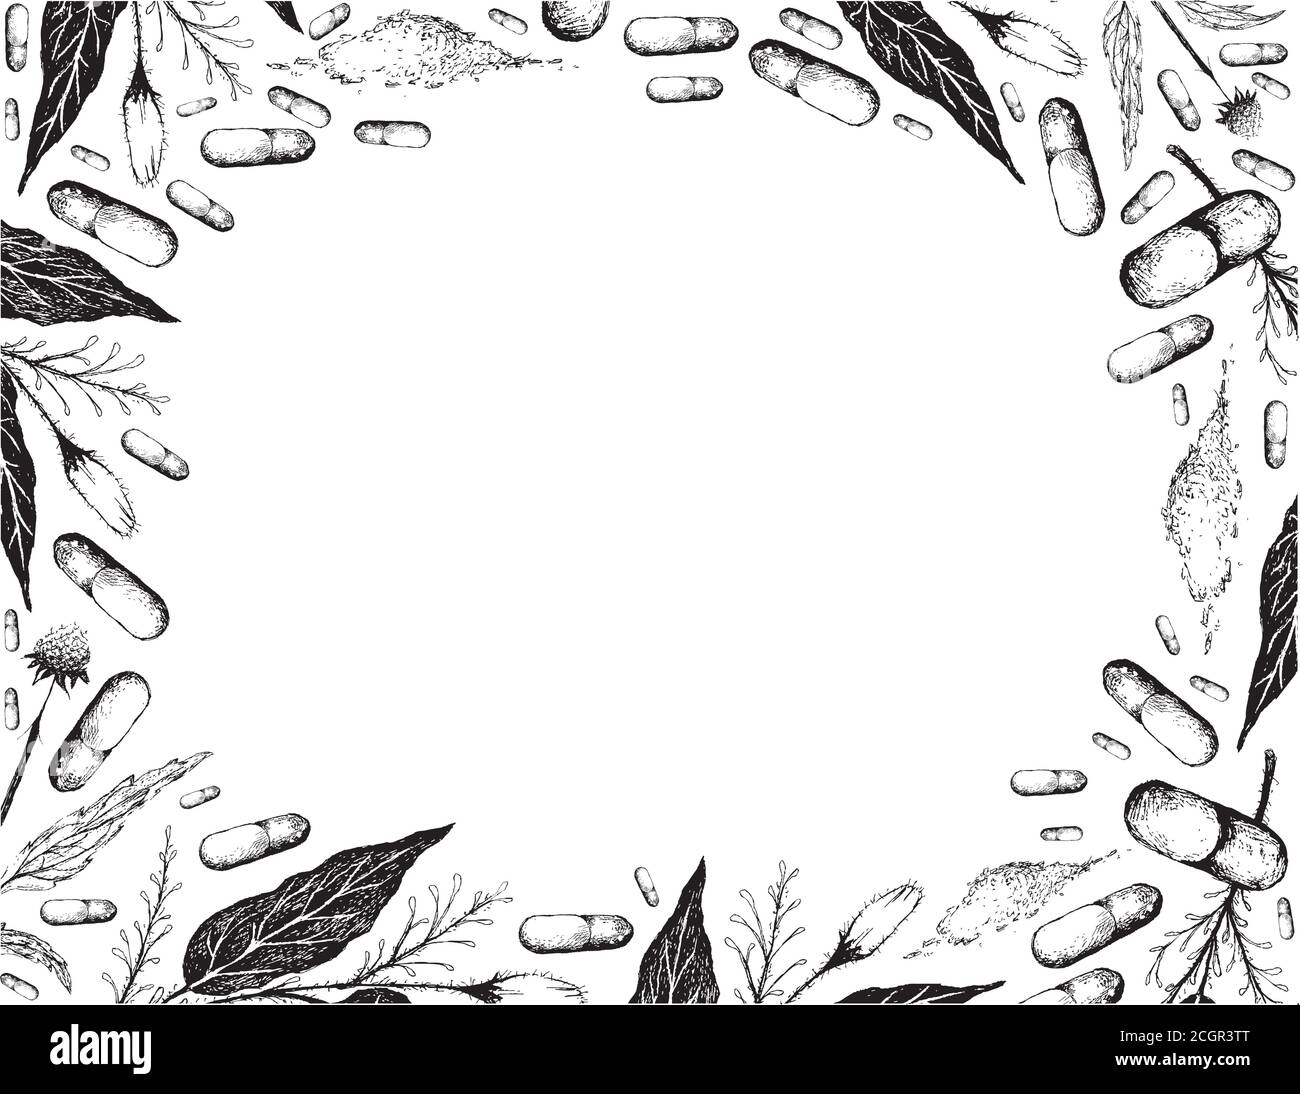 Gemüse und Kraut, handgezeichnete Illustration Rahmen von Kariyat oder Andrographis Paniculata Pflanzen mit Echinacea oder Kegelblumen Pflanzen. Stock Vektor